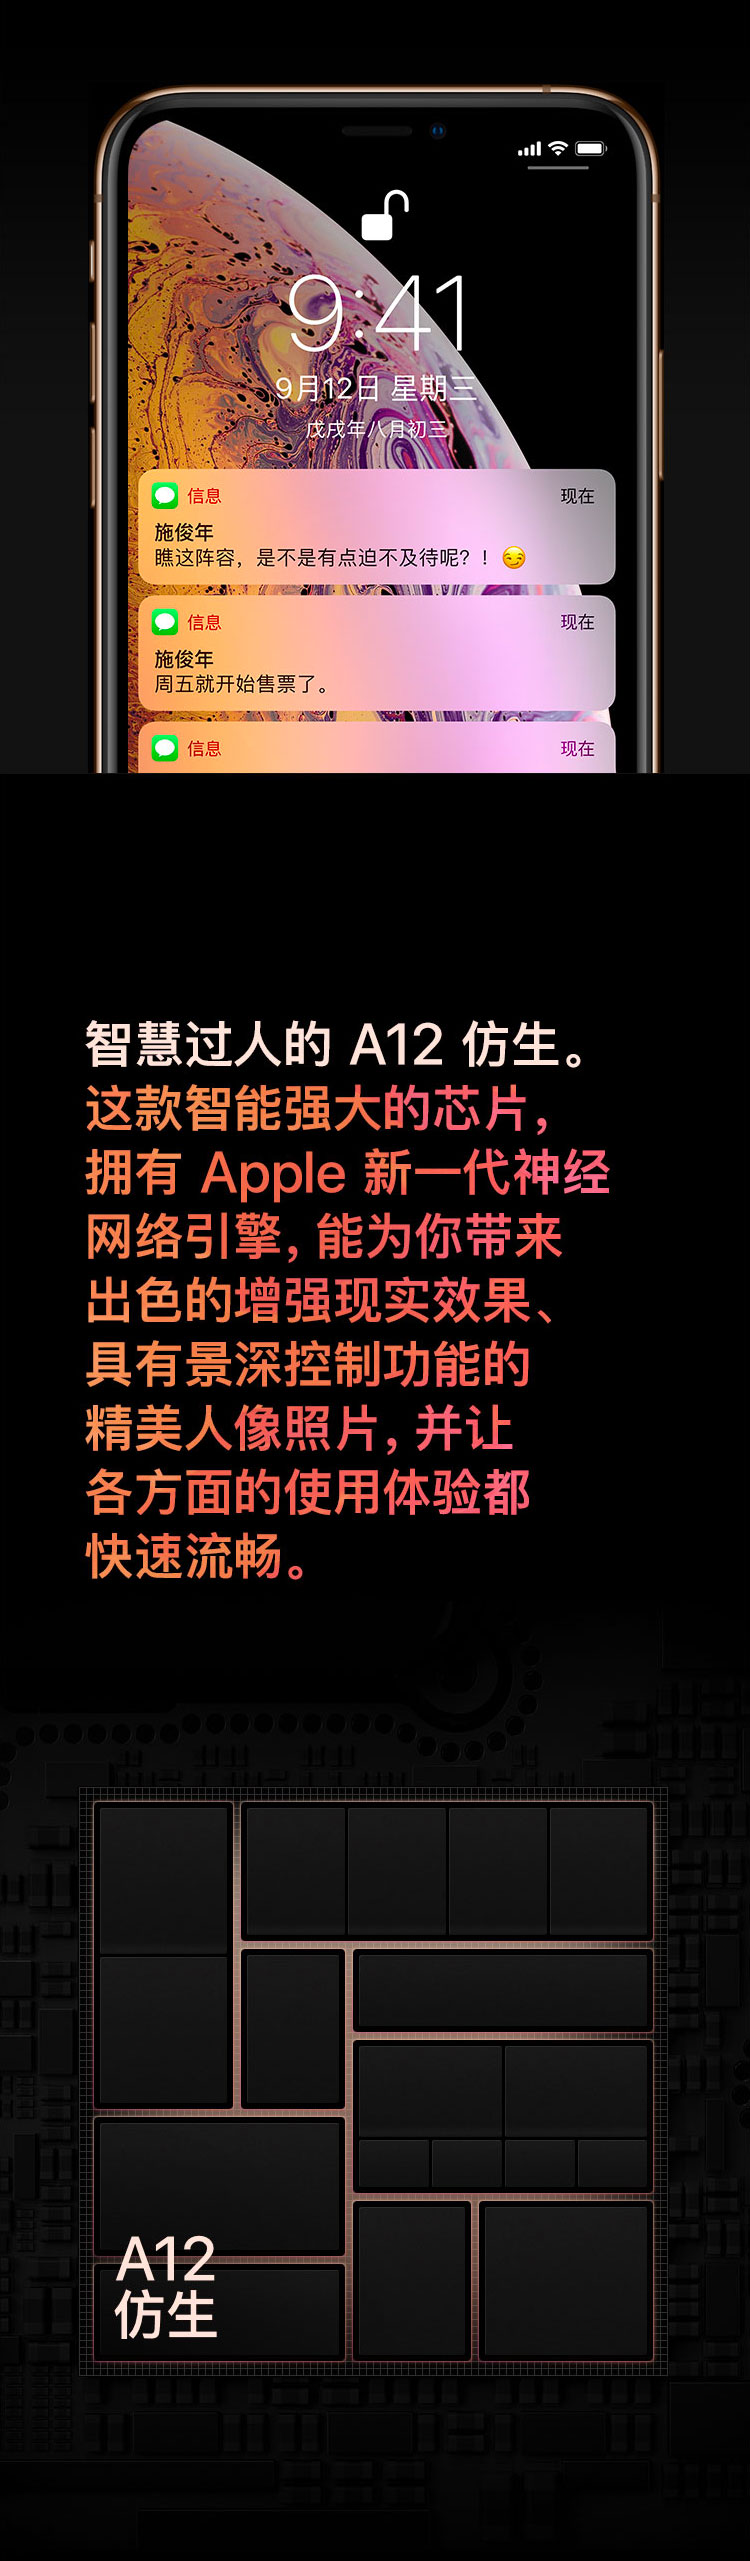 中山手机网 苹果(apple) iphonexs手机专卖